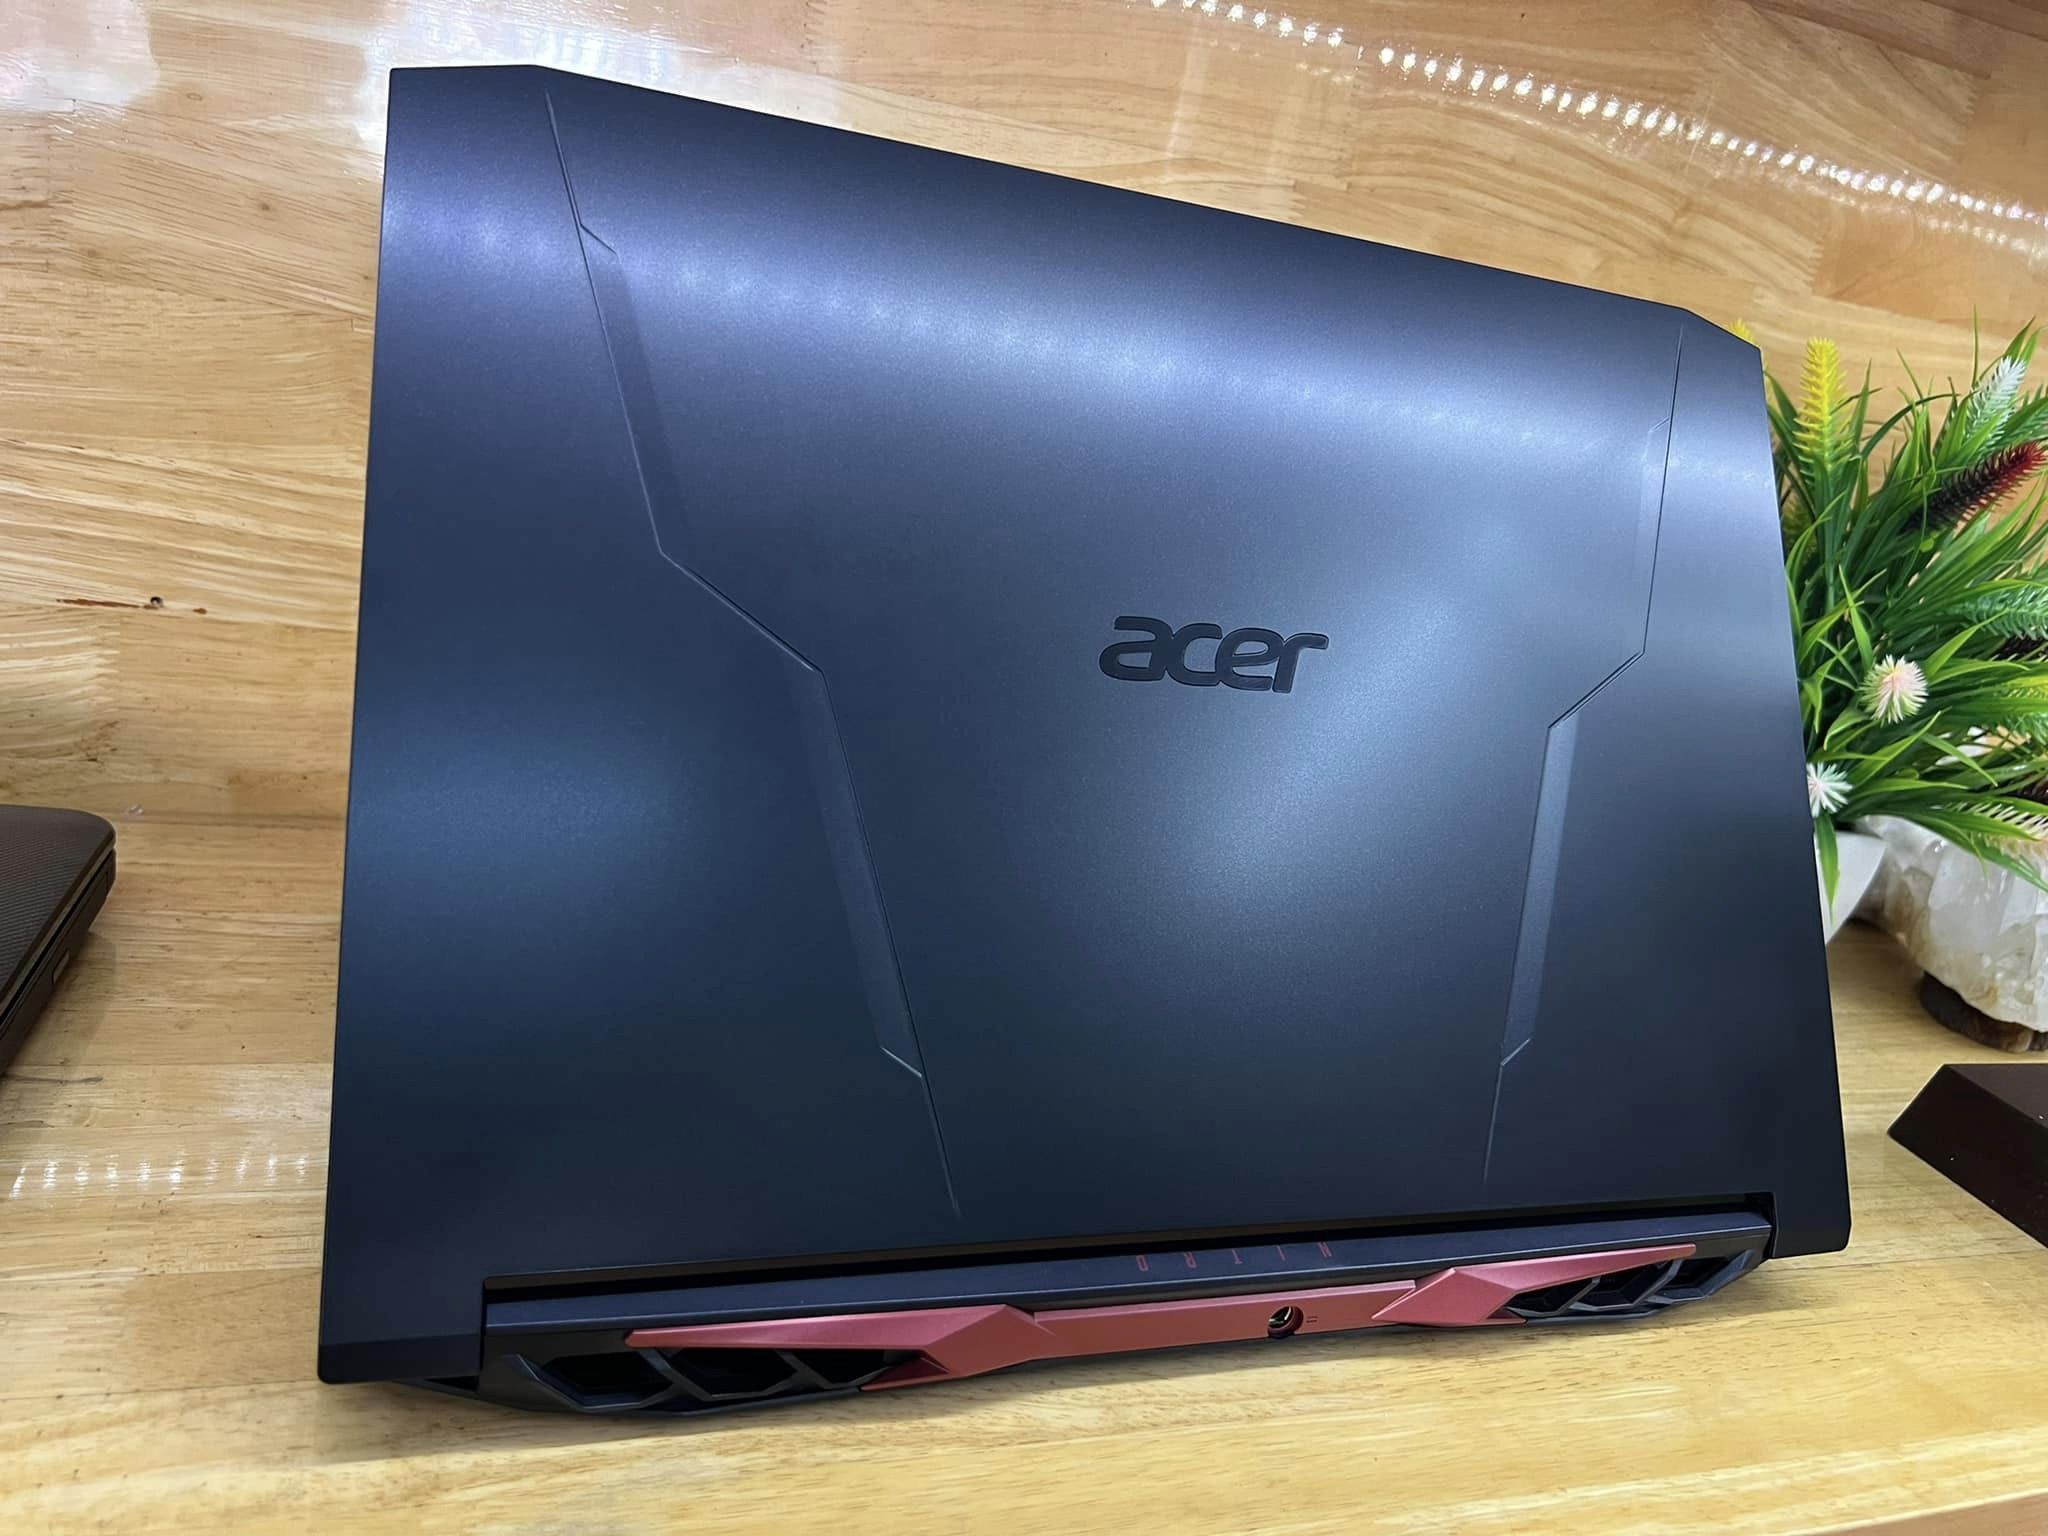 Acer Nitro 5 Ryzen 7 5800H/8G/512G/RTX 3060 6G/15.6 FHD 144hz Like New fullbox